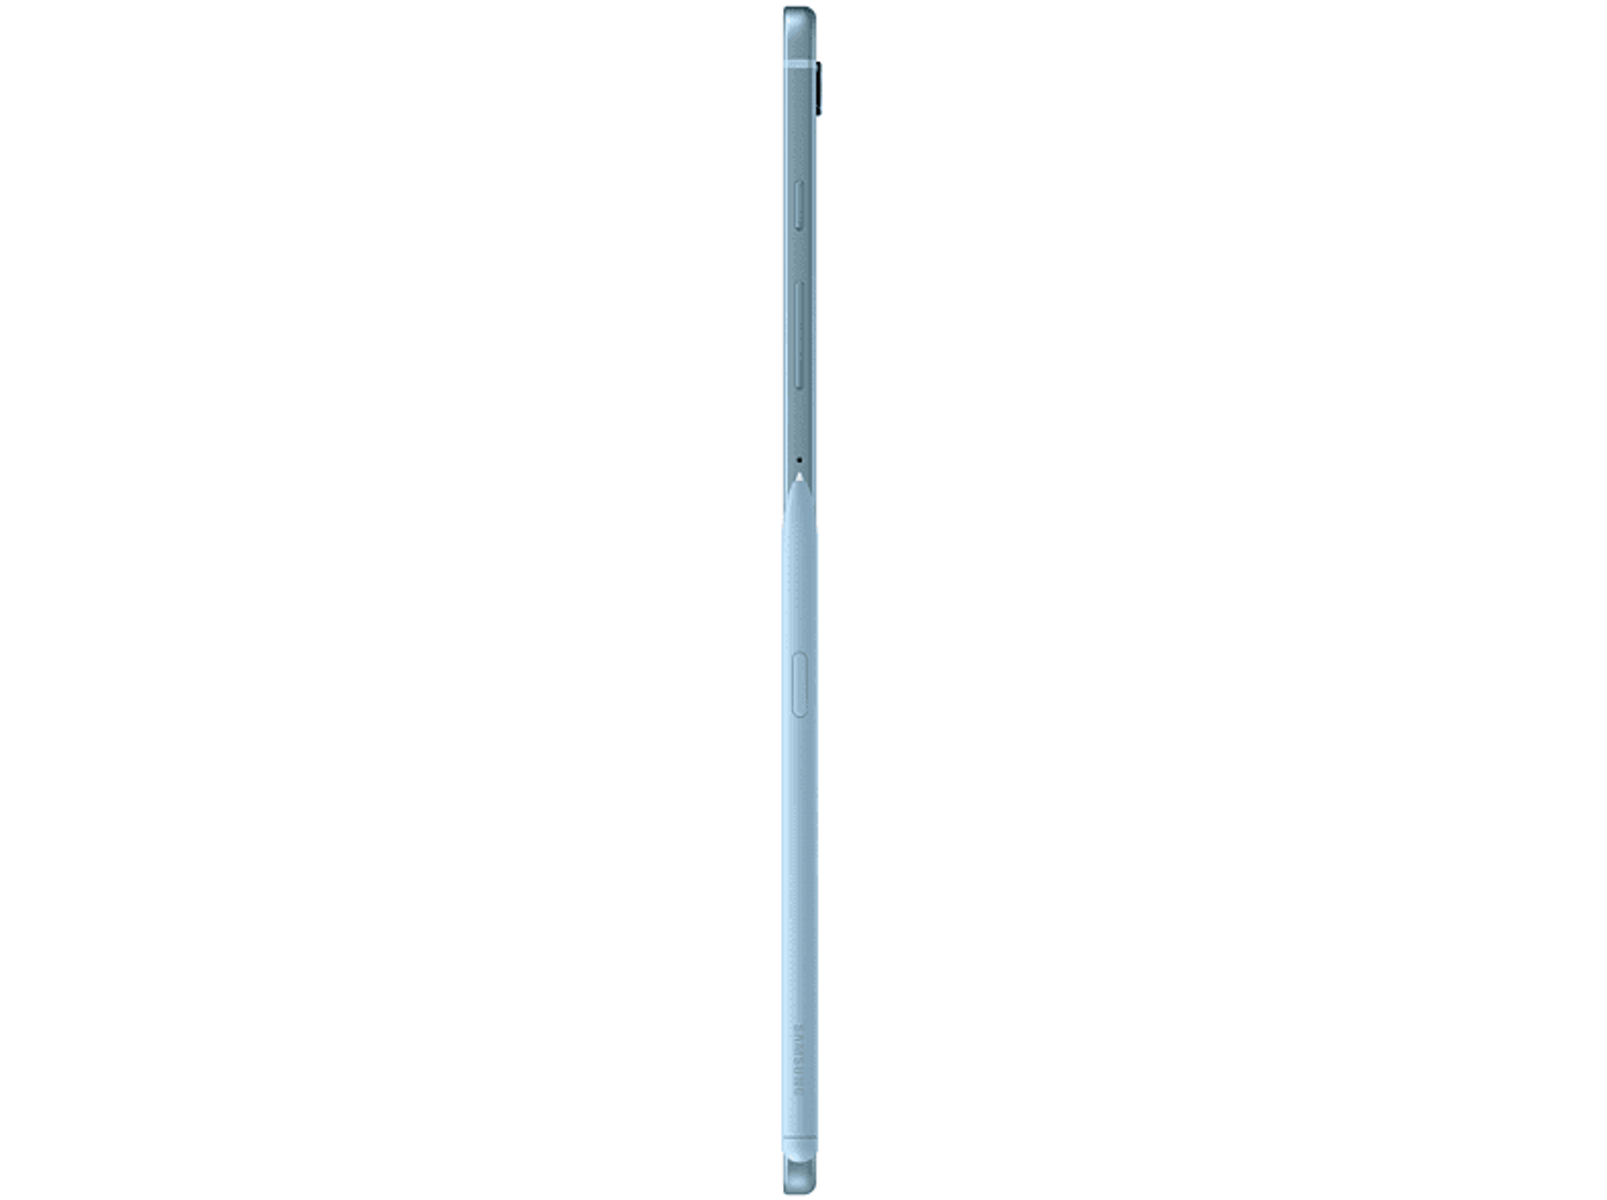 SAMSUNG Galaxy 2022, Blau GB, Tablet, Zoll, Lite 10,4 128 S6 Tab